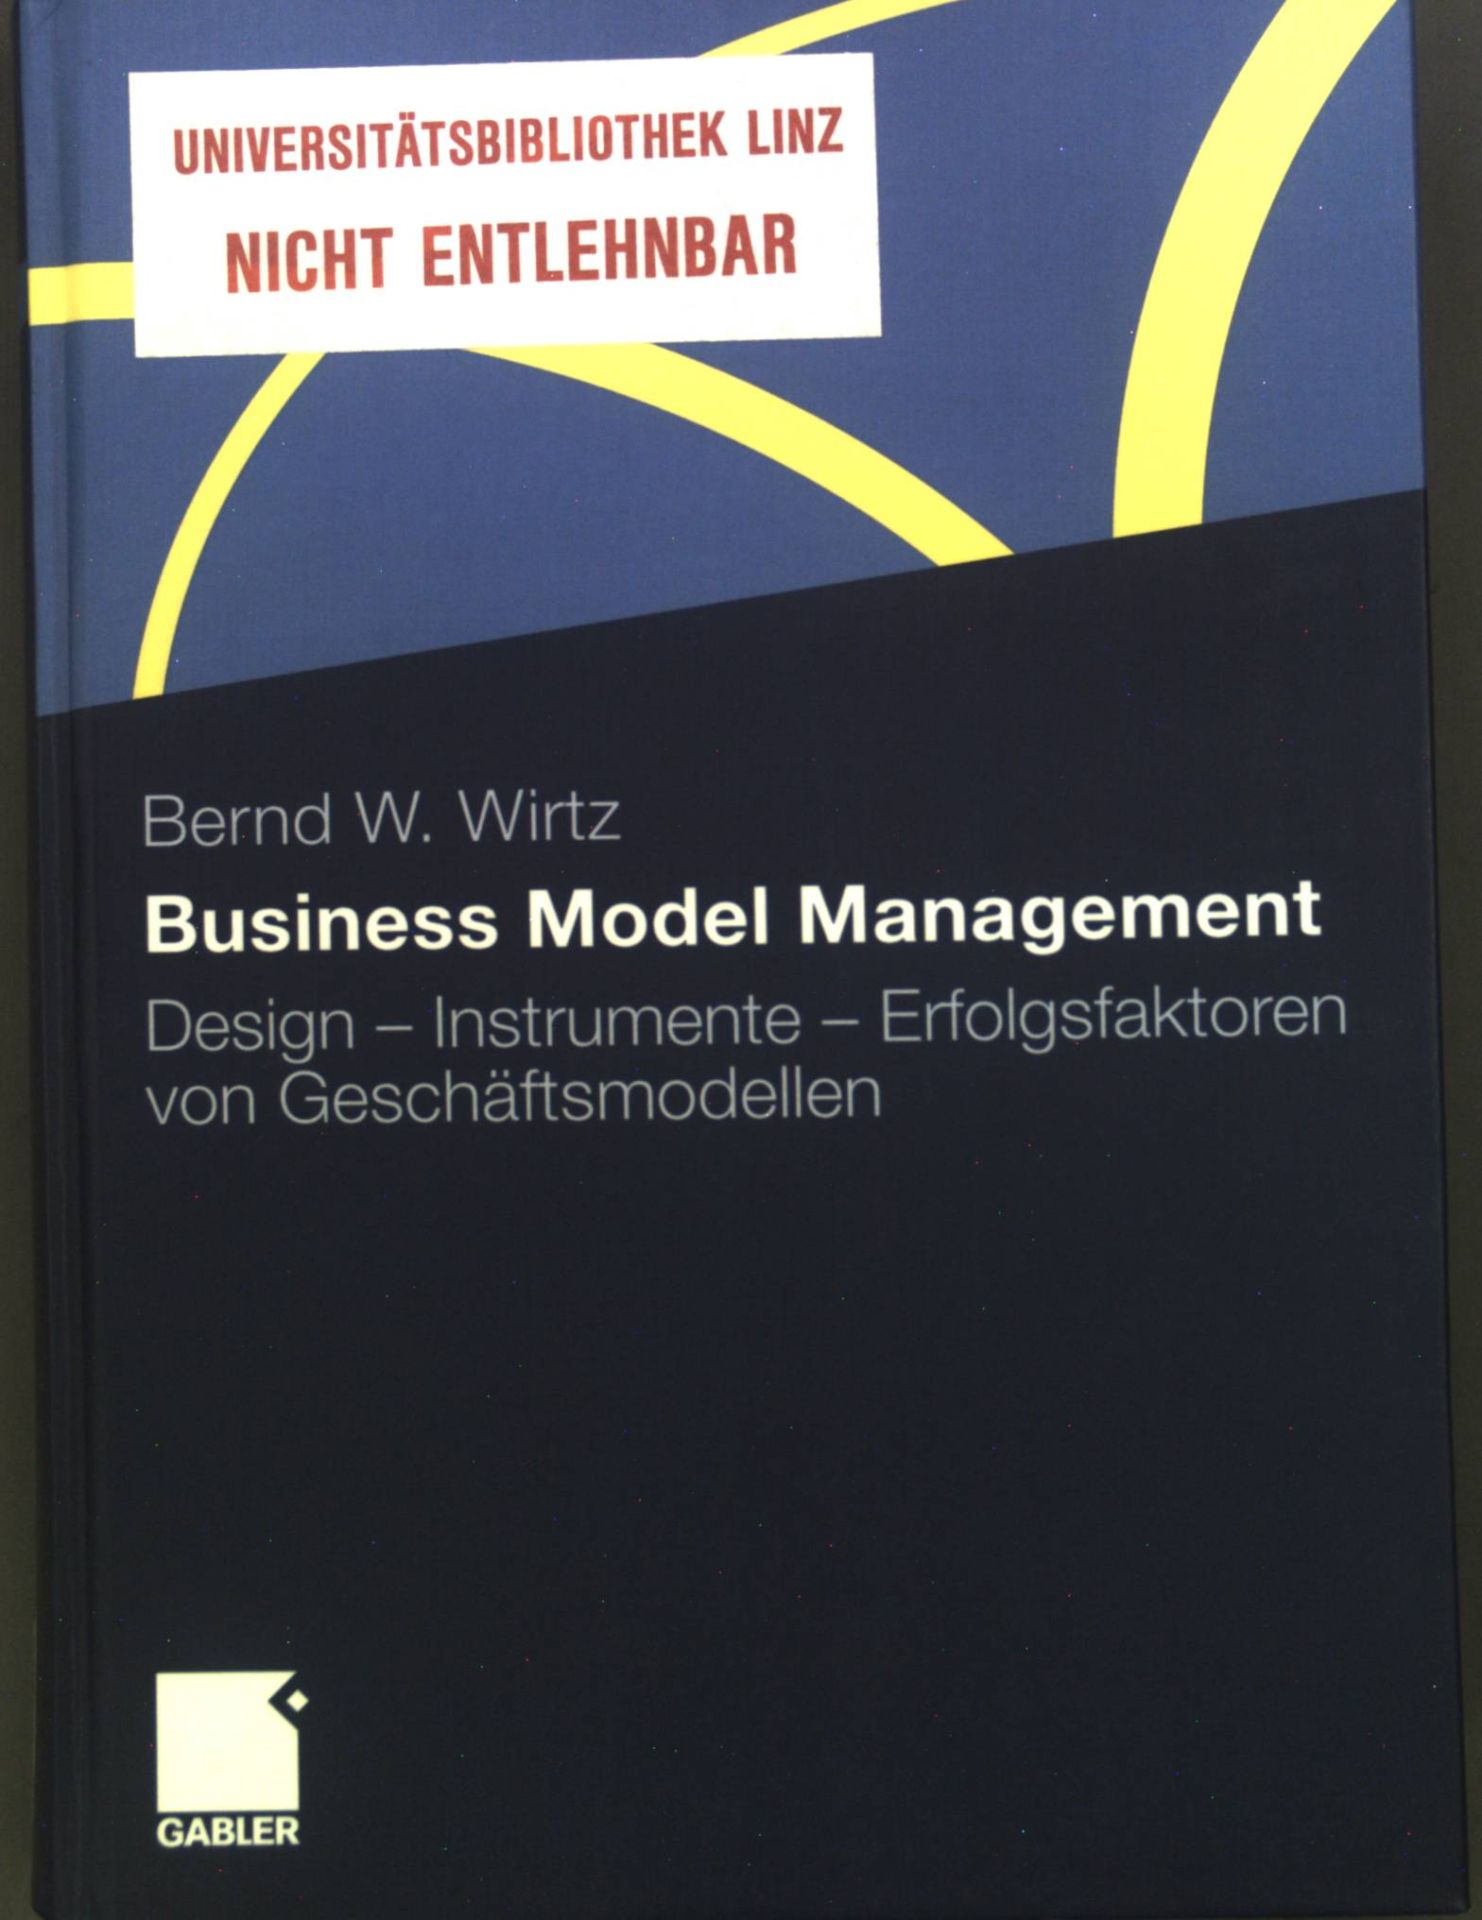 Business model management : Design - Instrumente - Erfolgsfaktoren von Geschäftsmodellen. - Wirtz, Bernd W.